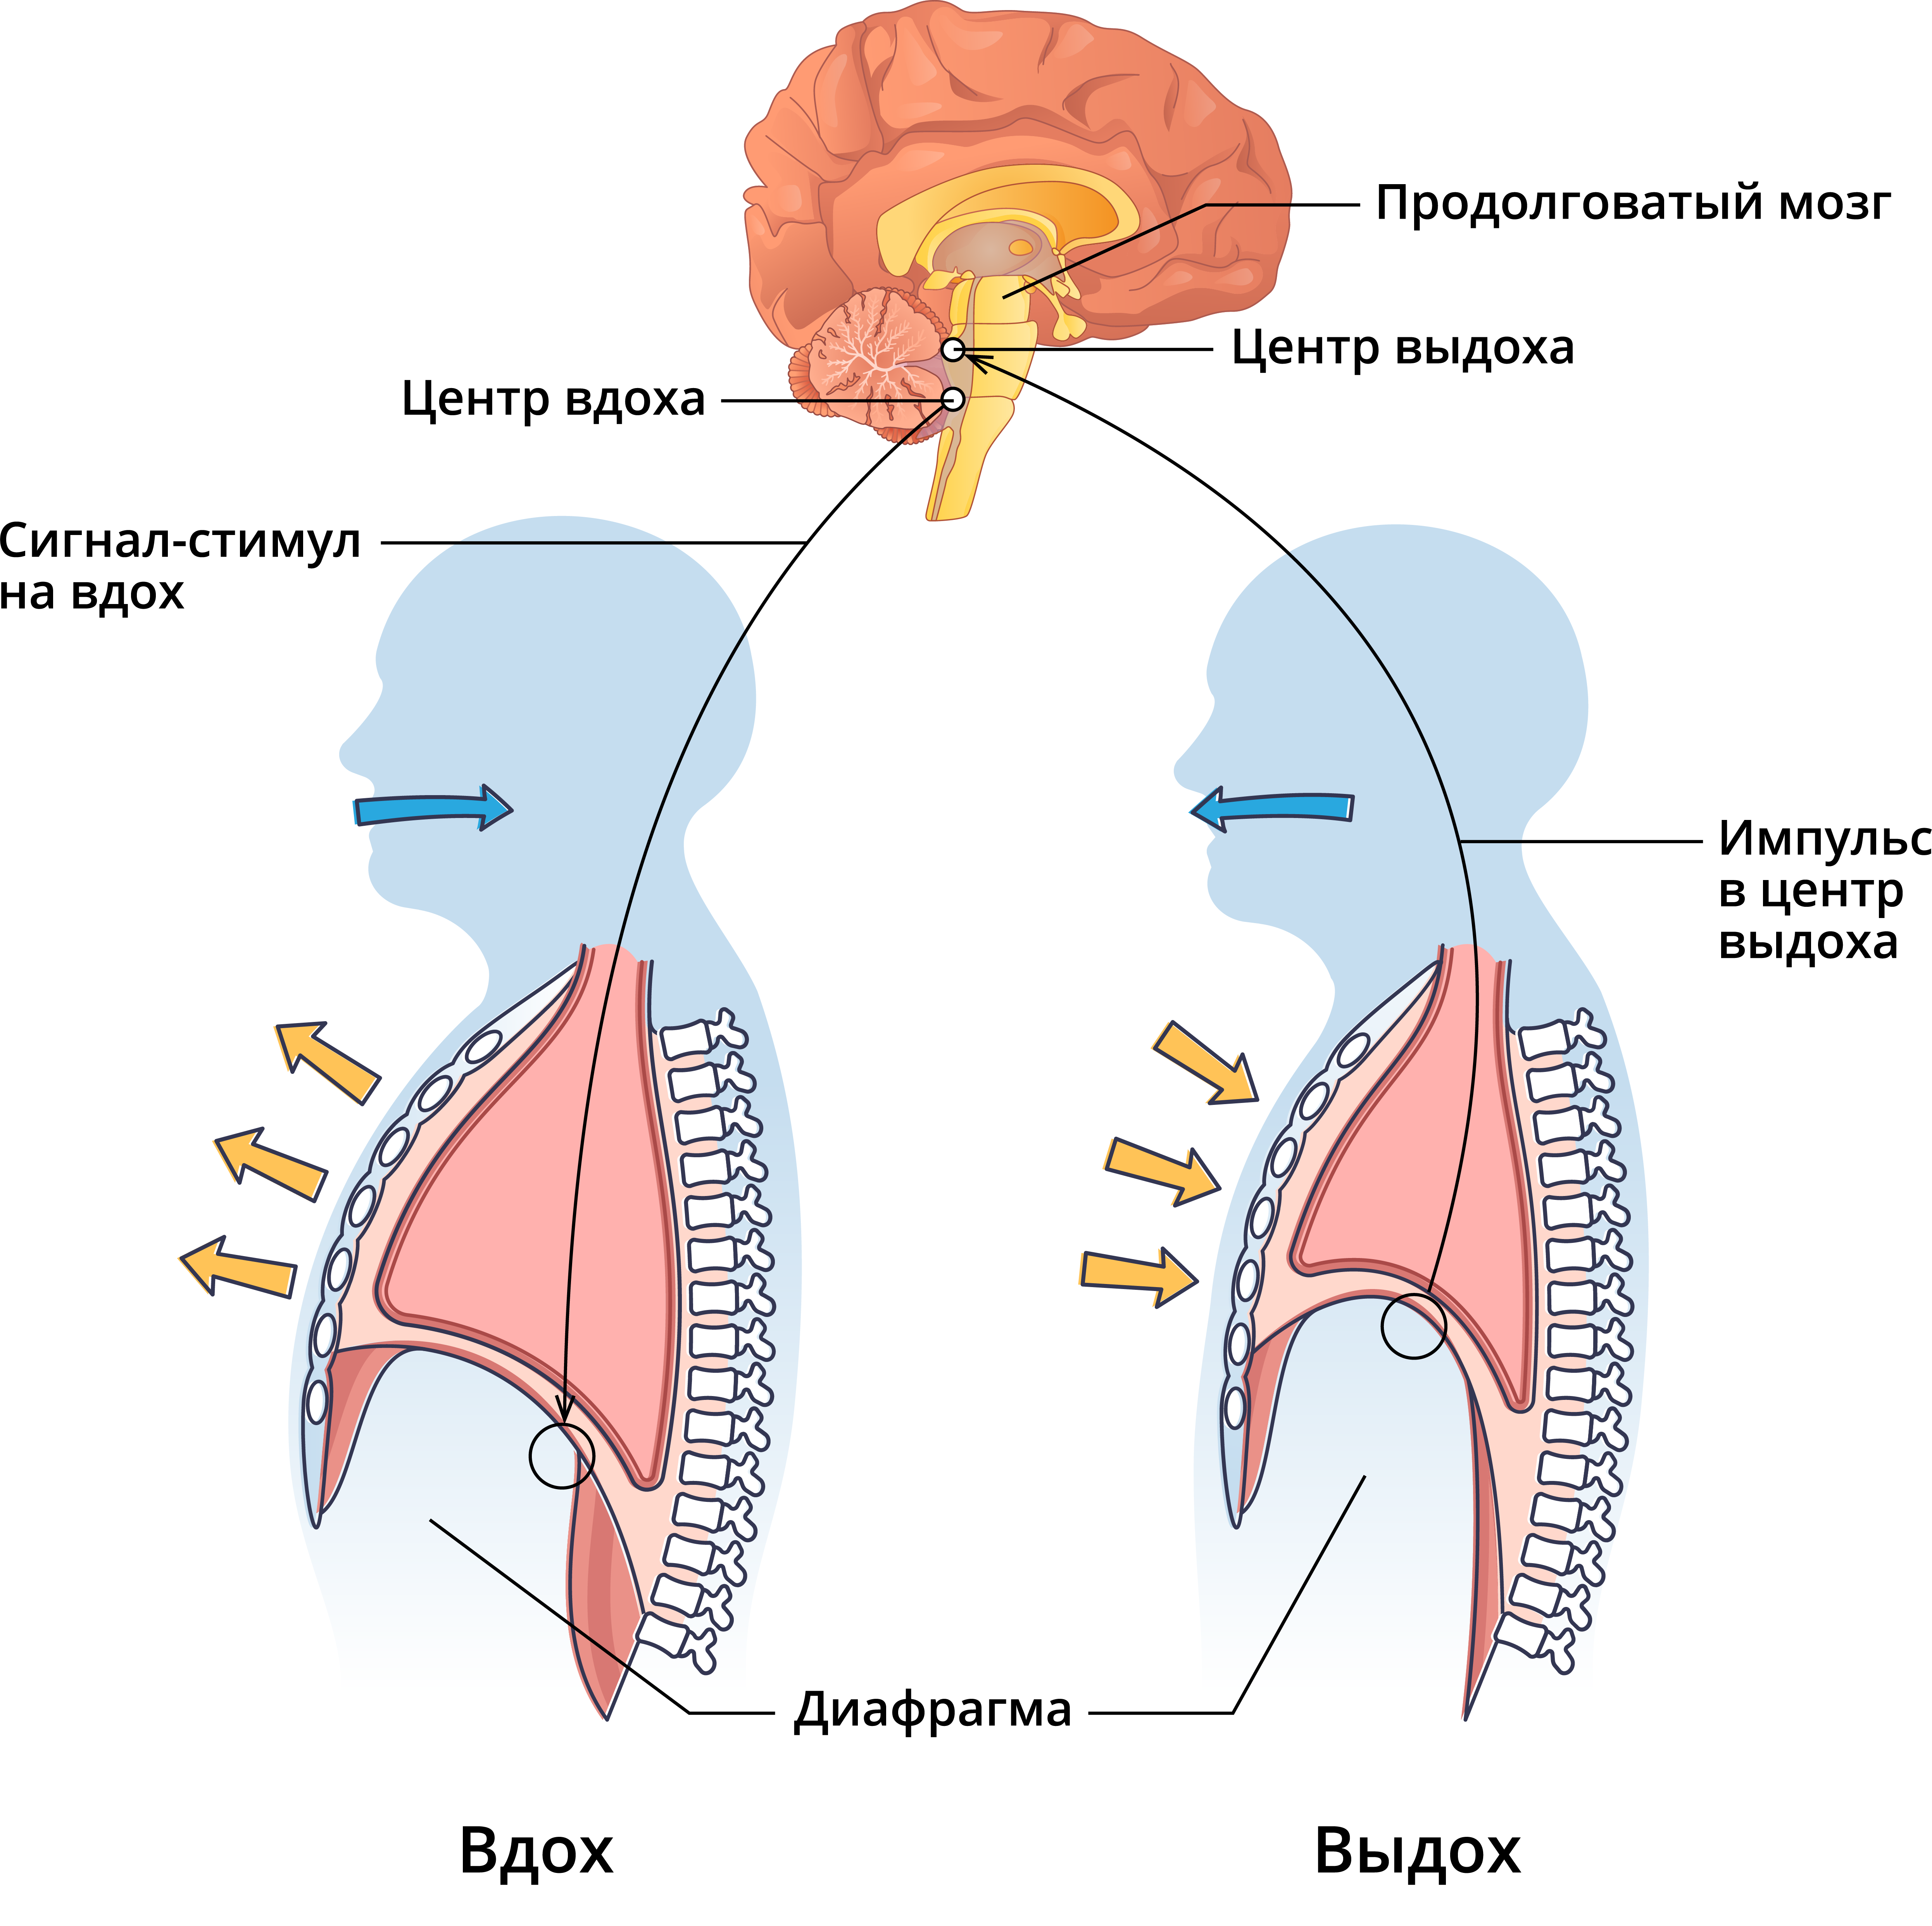 Вспомните как регулируется дыхание у человека зная. Рефлекторная регуляция дыхания схема. Защитные рефлексы дыхательной системы схема. Нервная регуляция дыхания схема. Регуляция дыхательных движений схема.